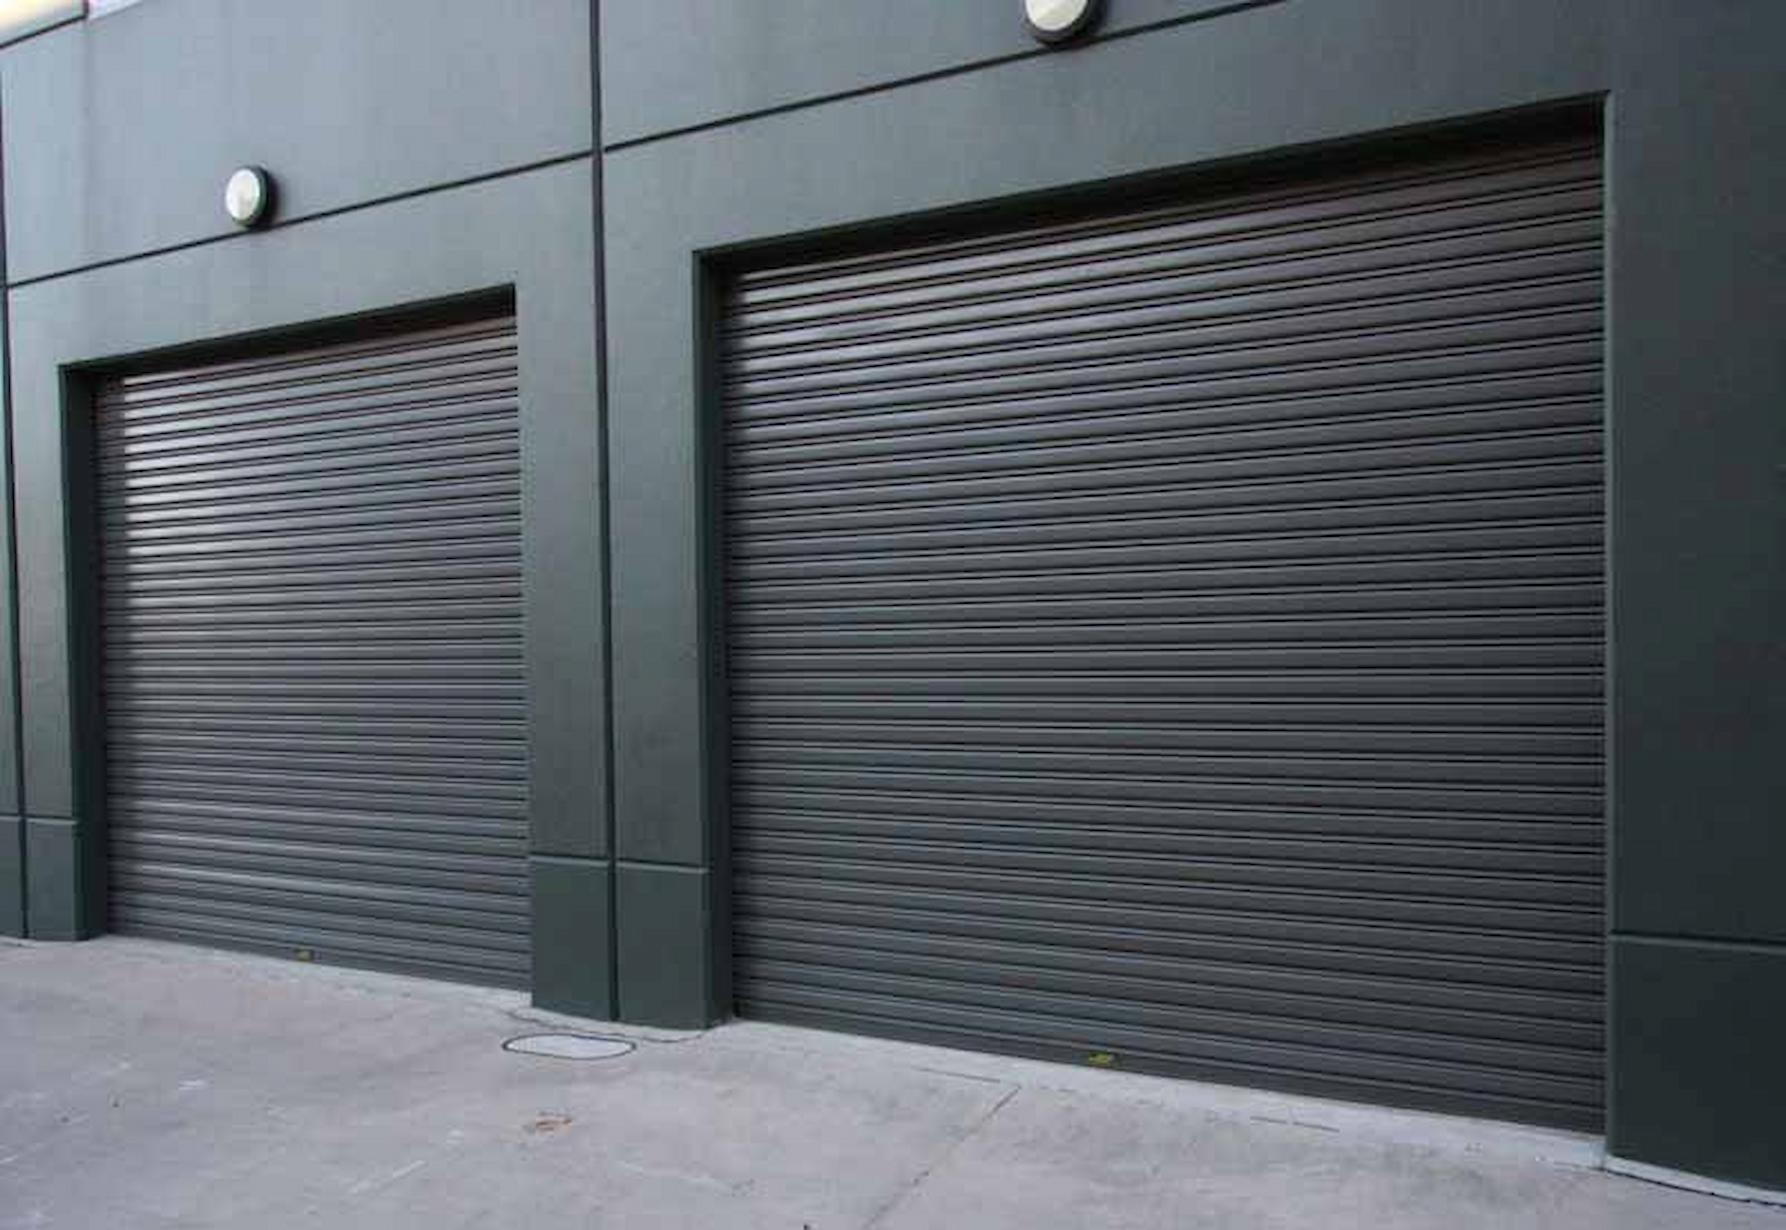 Five Top Roller Shutter Garage Door Trends To Look Out